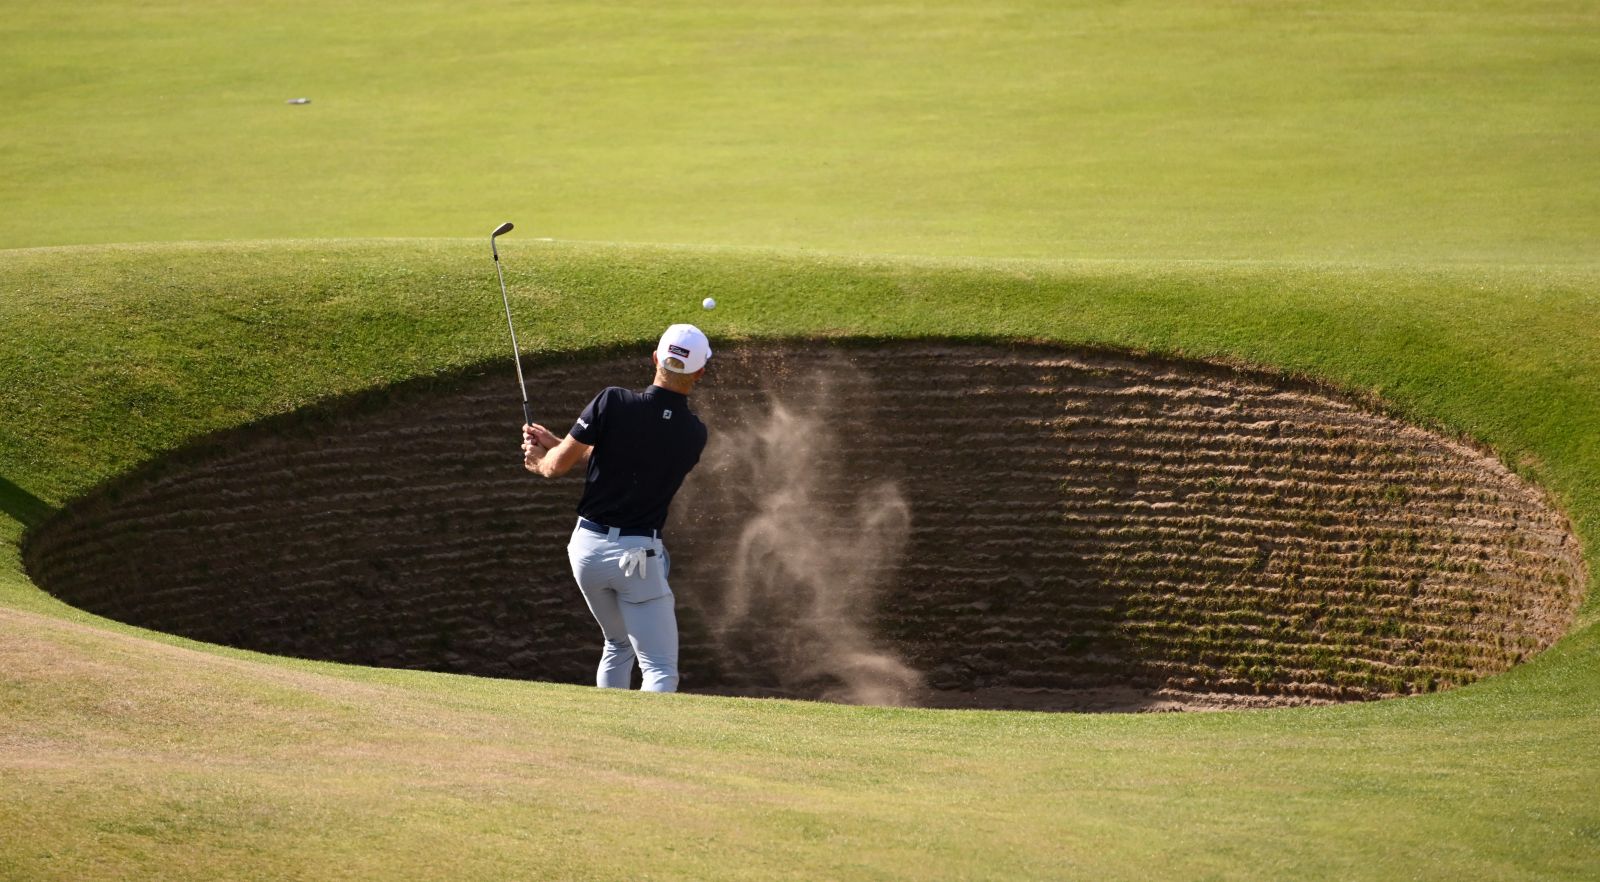 VGolf Travel sở hữu cơ hội hiếm hoi chỉ dành cho 8 golfer - chơi golf tại St.Andrews Old Course